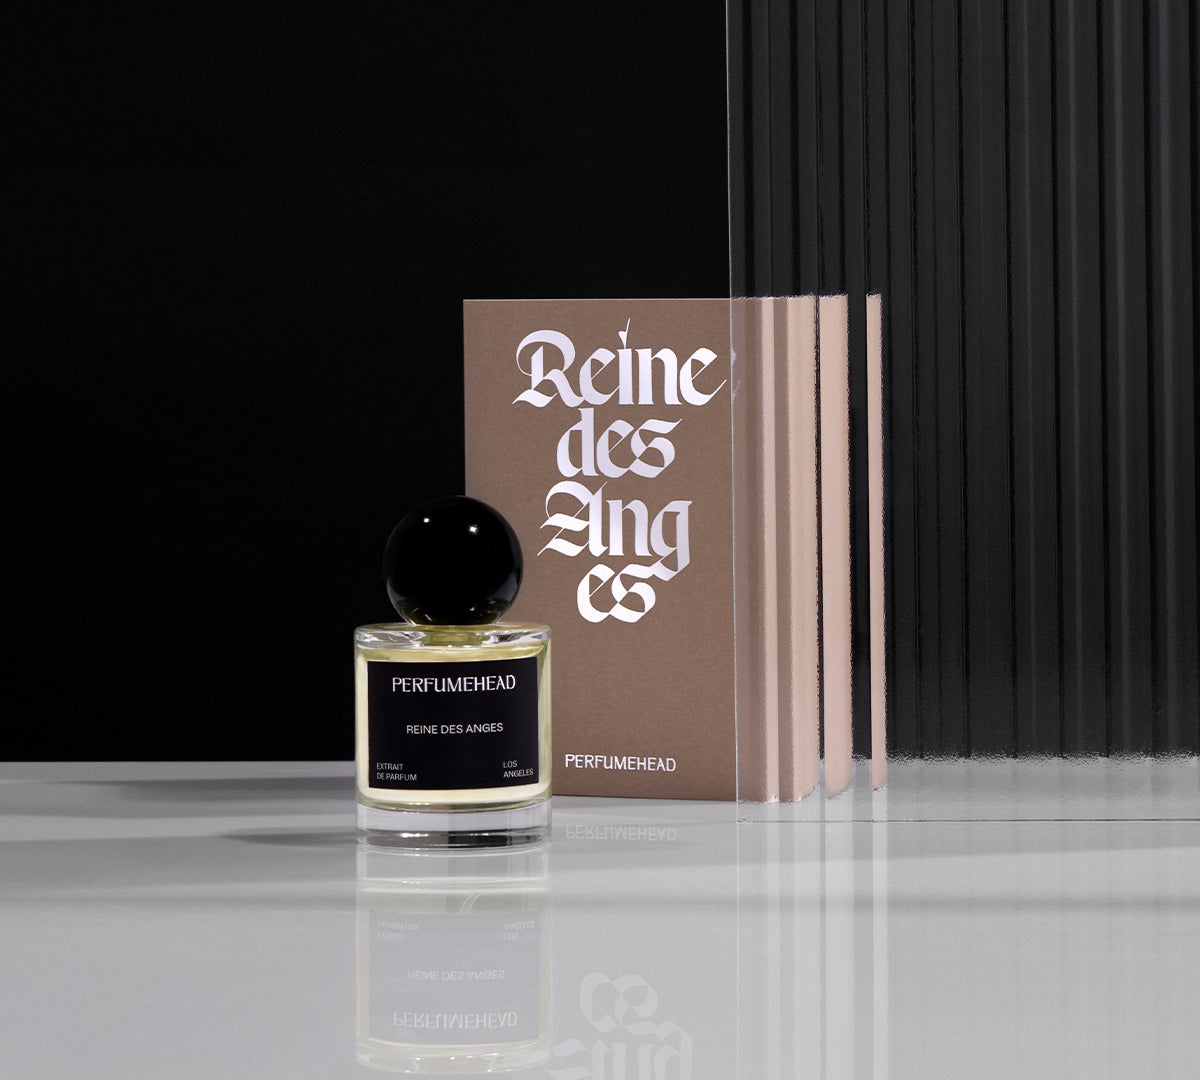 Reine des Anges extrait de parfum 50ml signature bottle and box.